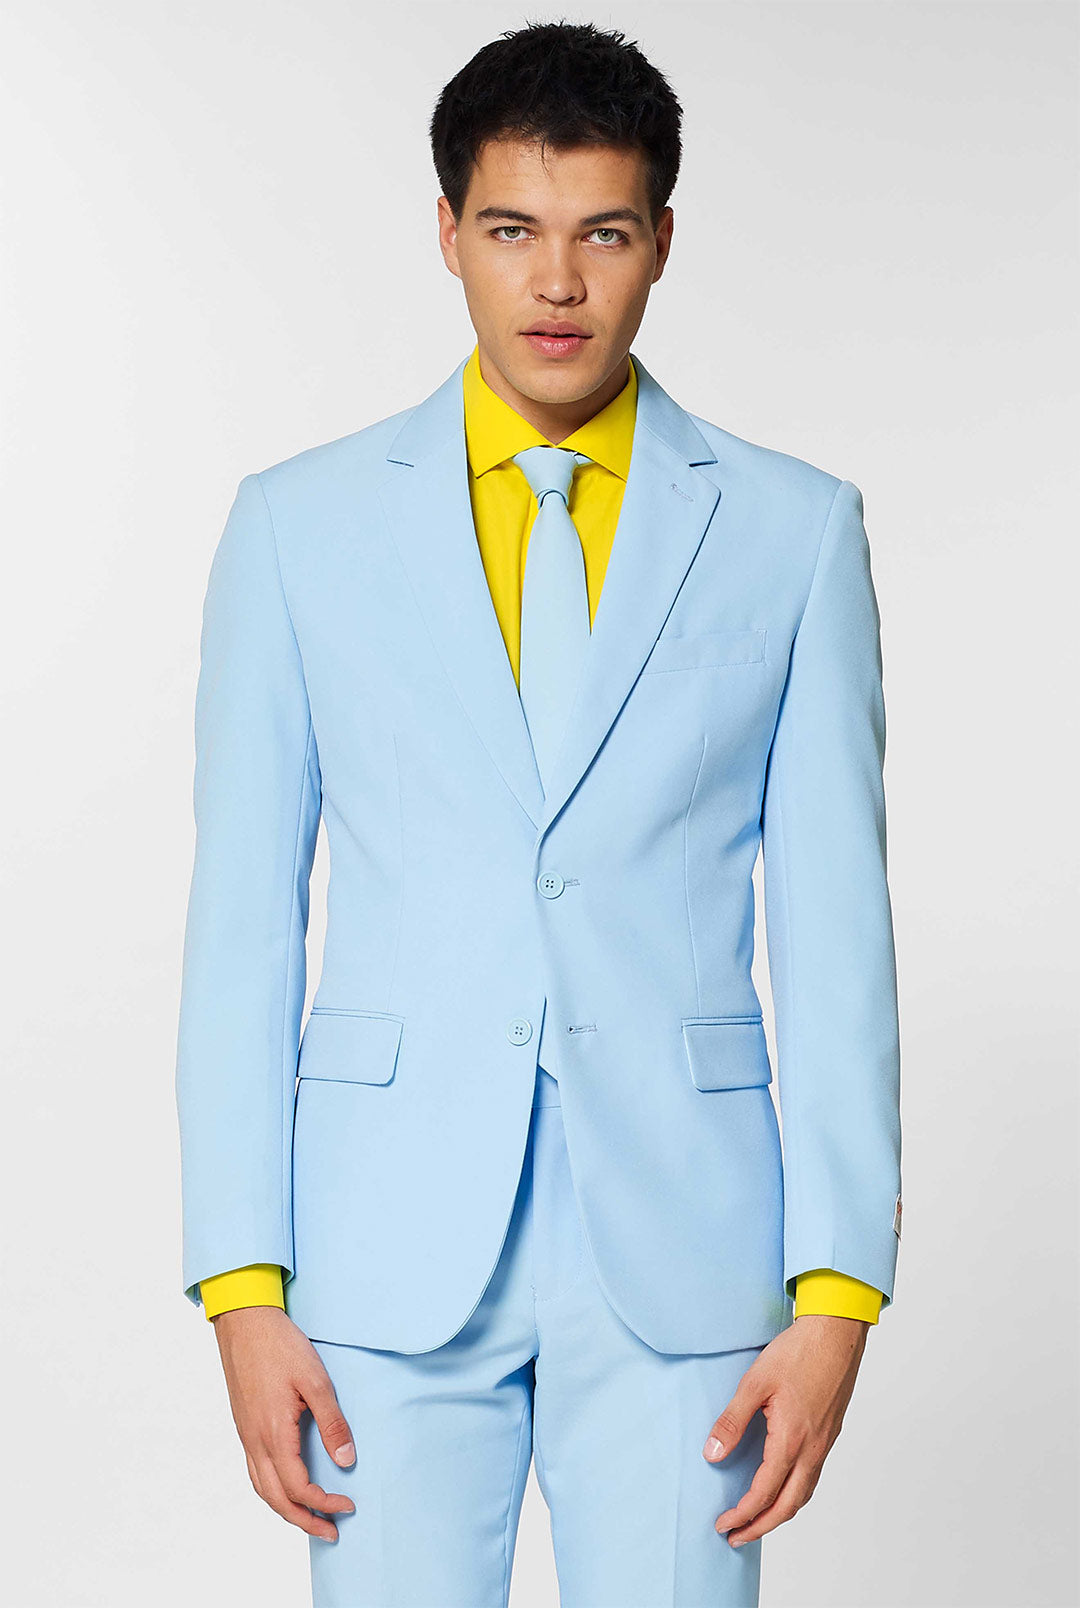 Buy Men 2 Piece Wedding Suit Light Blue Two Button Slim Fit Suit Online in  India - Etsy | Blue suit wedding, Wedding suits men, Light blue suit wedding